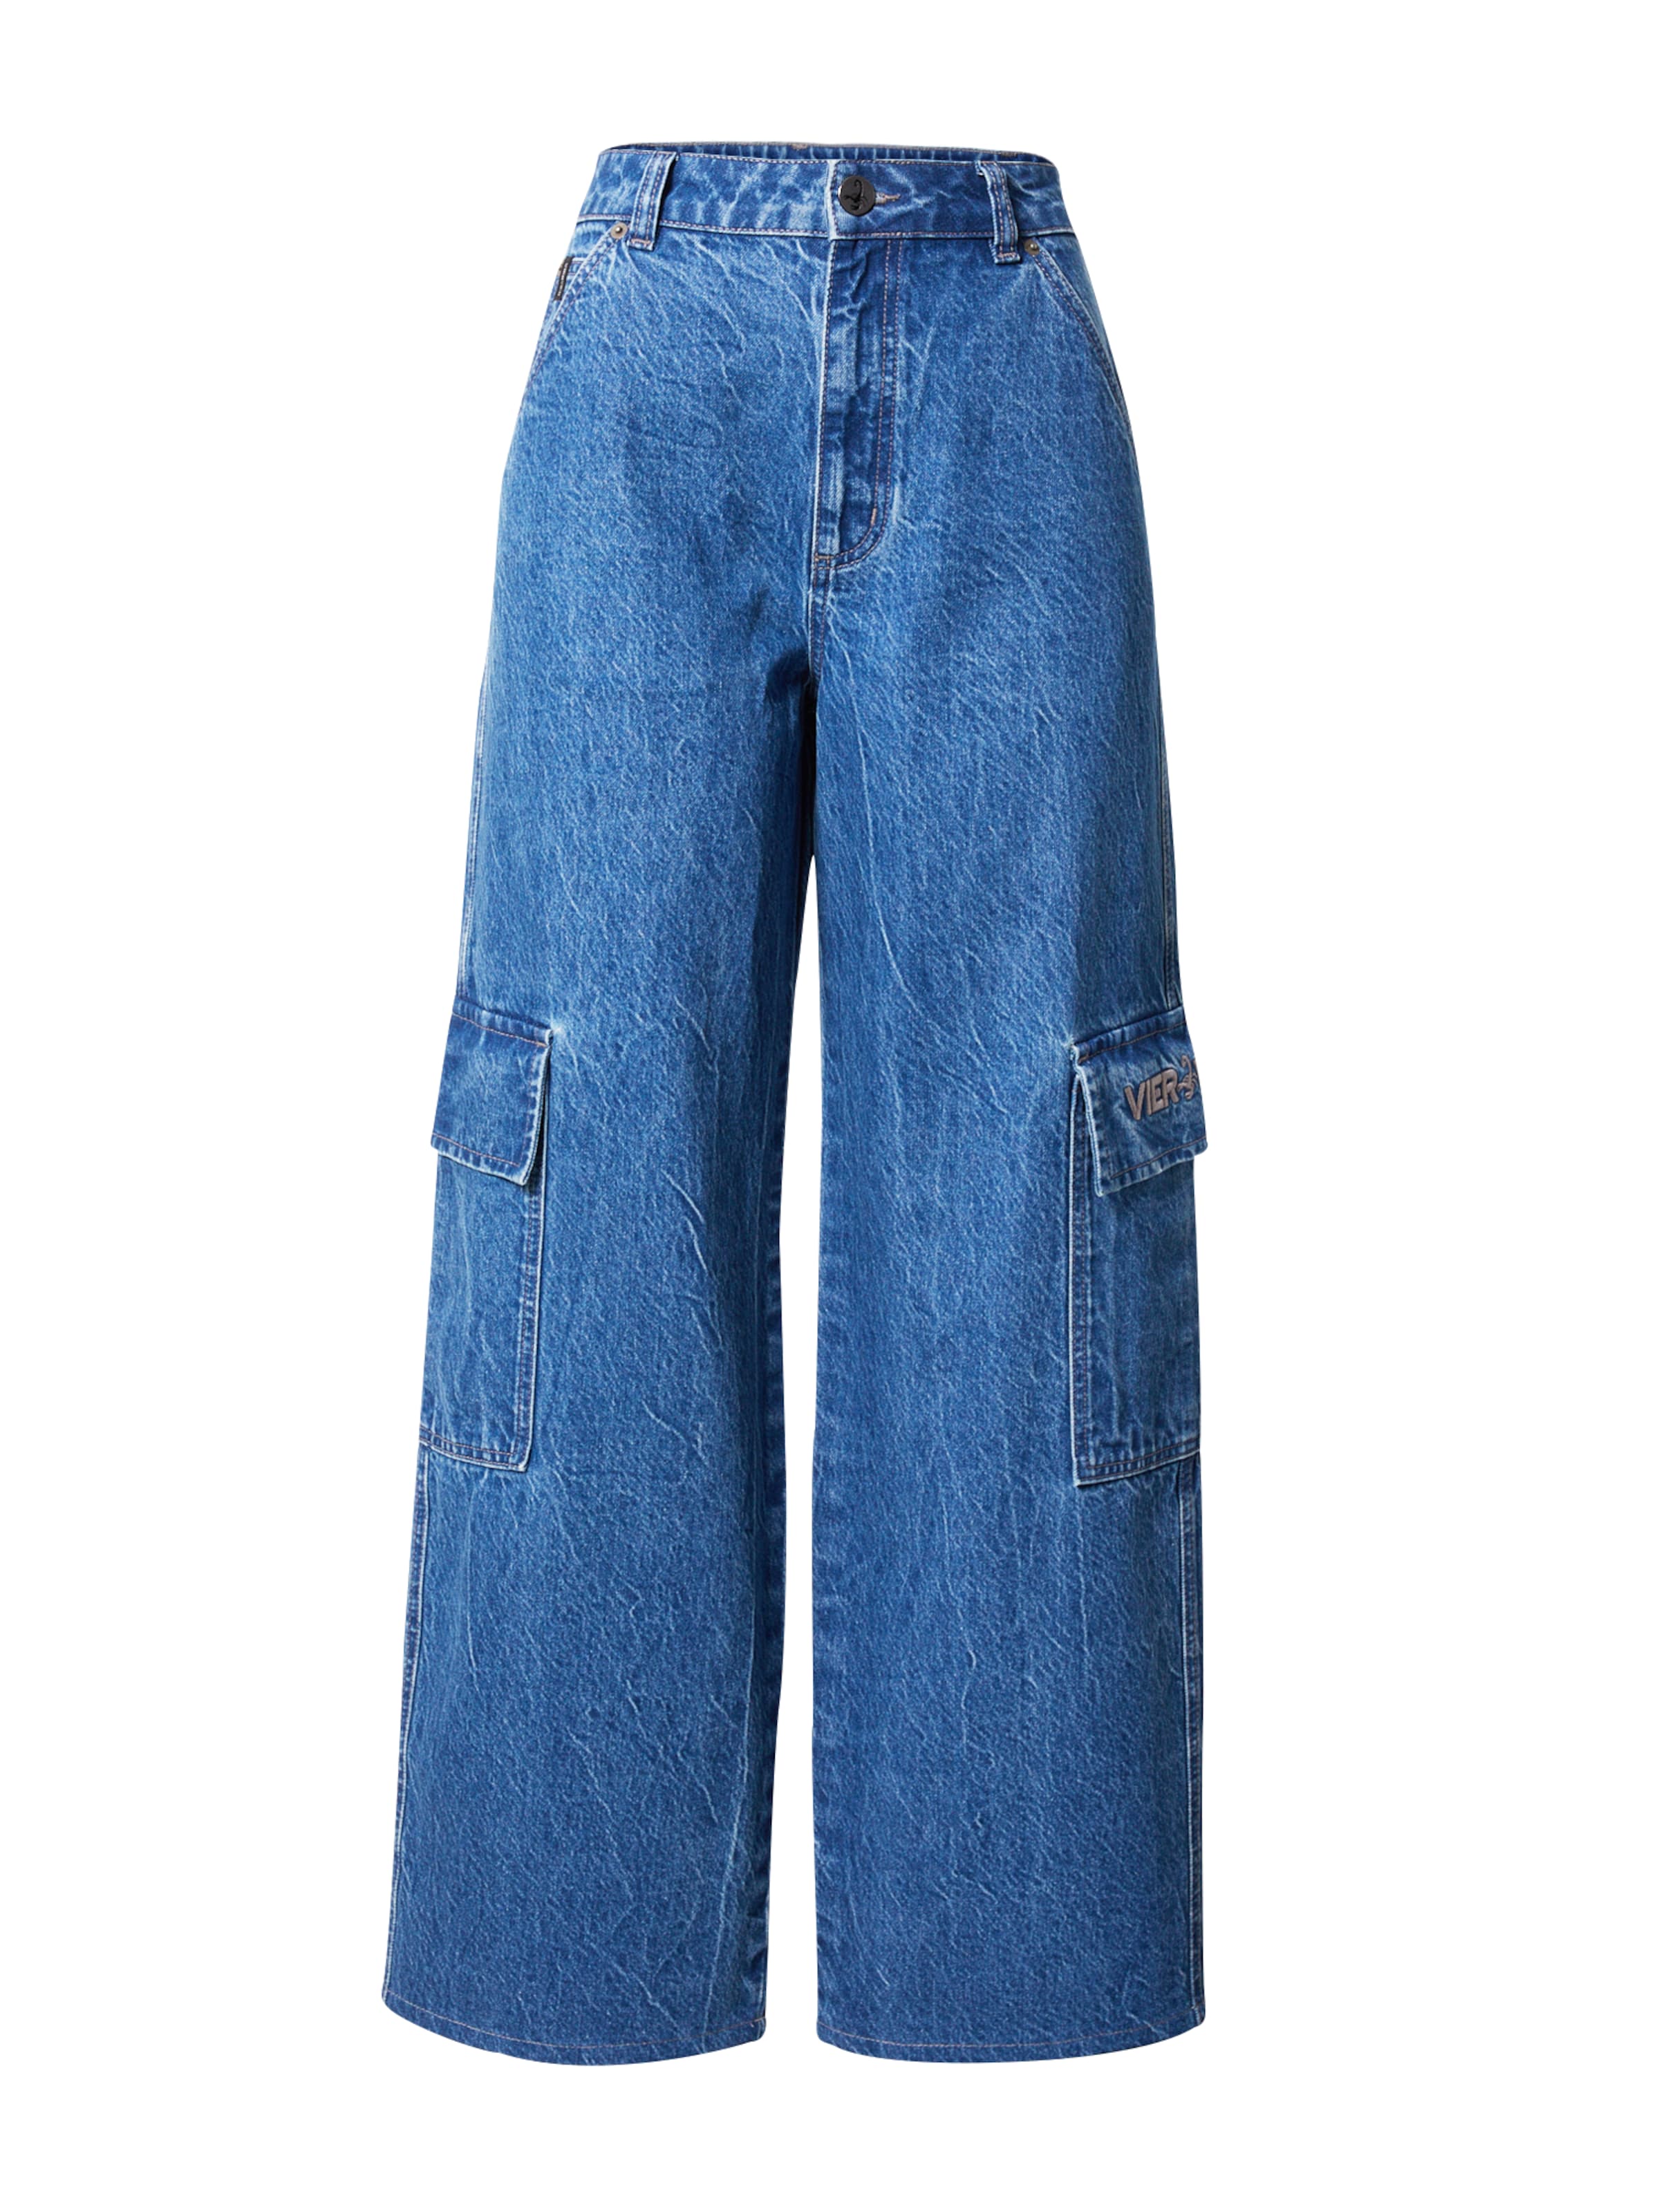 Frauen Jeans VIERVIER Jeans 'Bianca' in Blau - QP63711